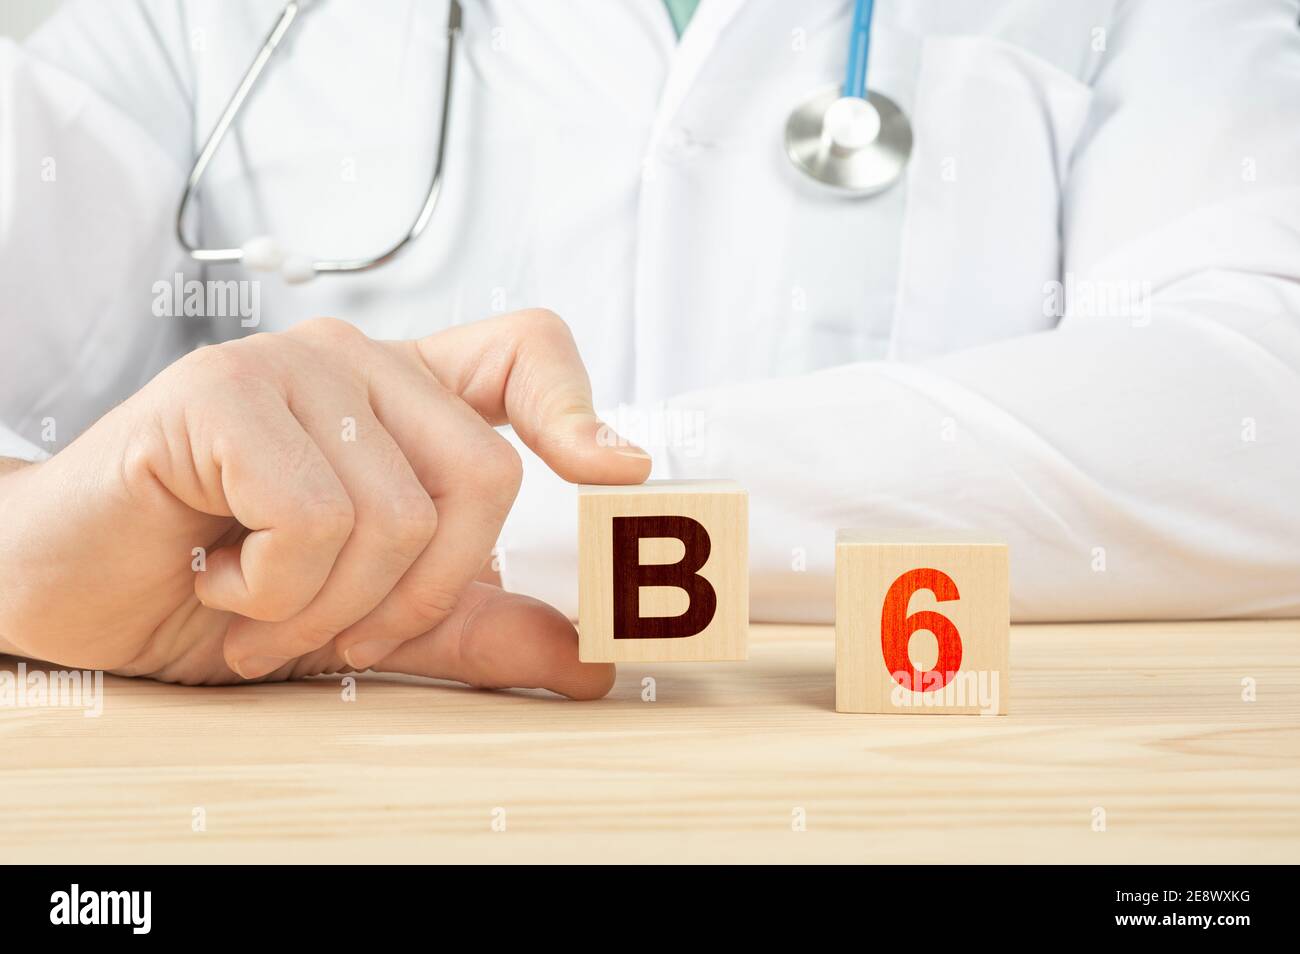 le médecin recommande de prendre de la vitamine b12. le médecin parle des avantages de la vitamine b6. Vitamine - concept de santé. Alphabet B6 sur cube en bois. Tient la main a Banque D'Images